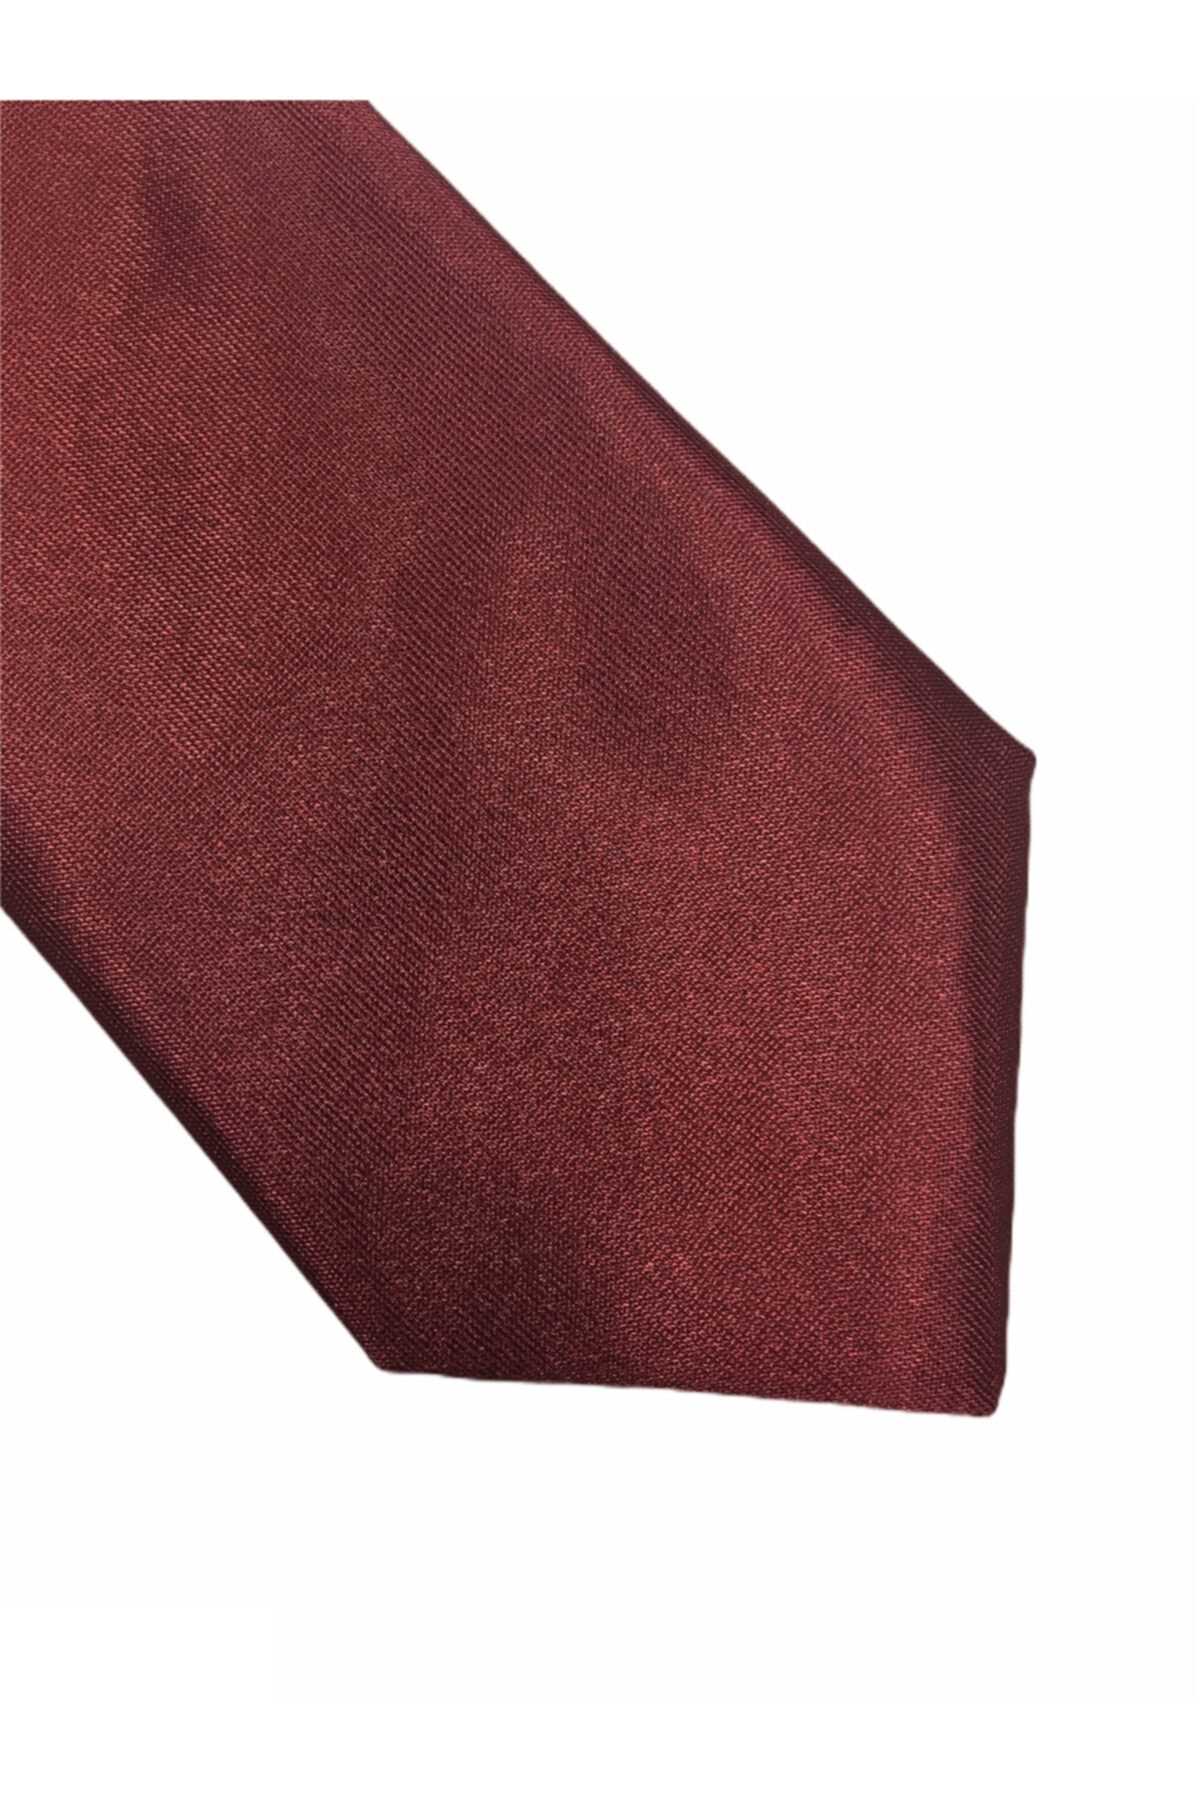 مدل کراوات مردانه 2021 شیک Zermon رنگ زرشکی ty42631971